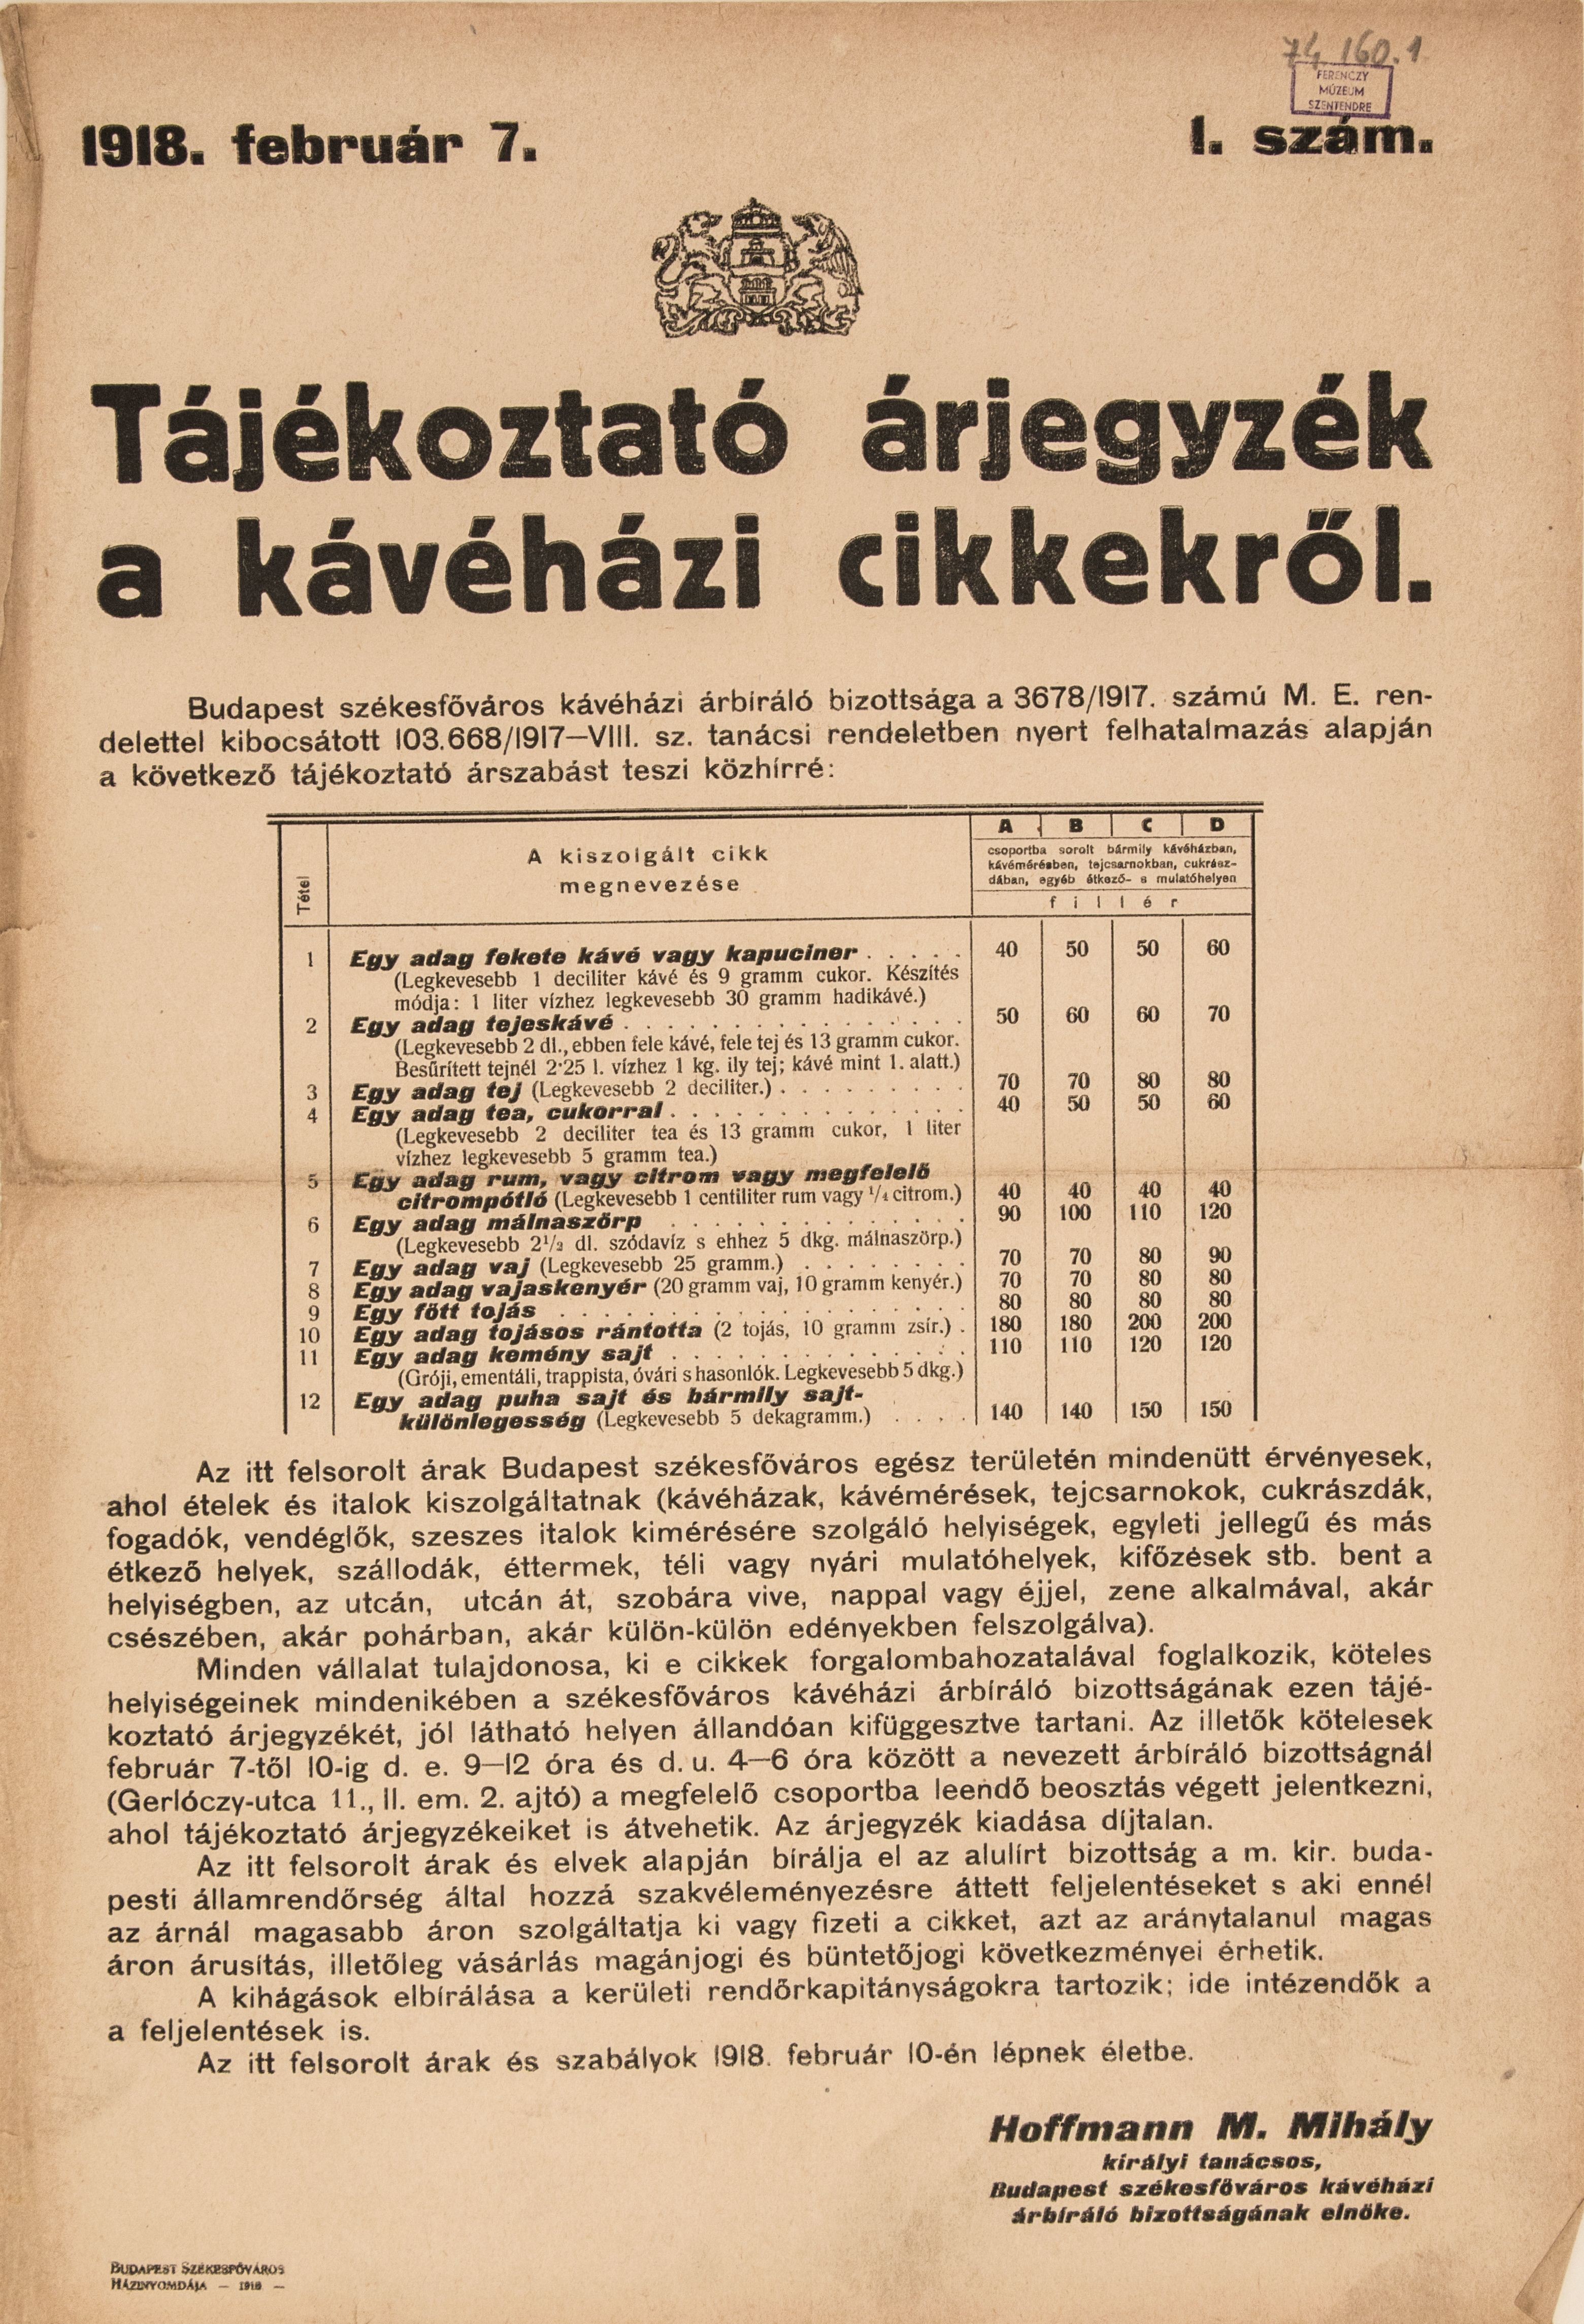 Tájékoztató árjegyzék a kávéházi cikkekről, 1918.02.07. (Ferenczy Múzeumi Centrum CC BY-NC-SA)